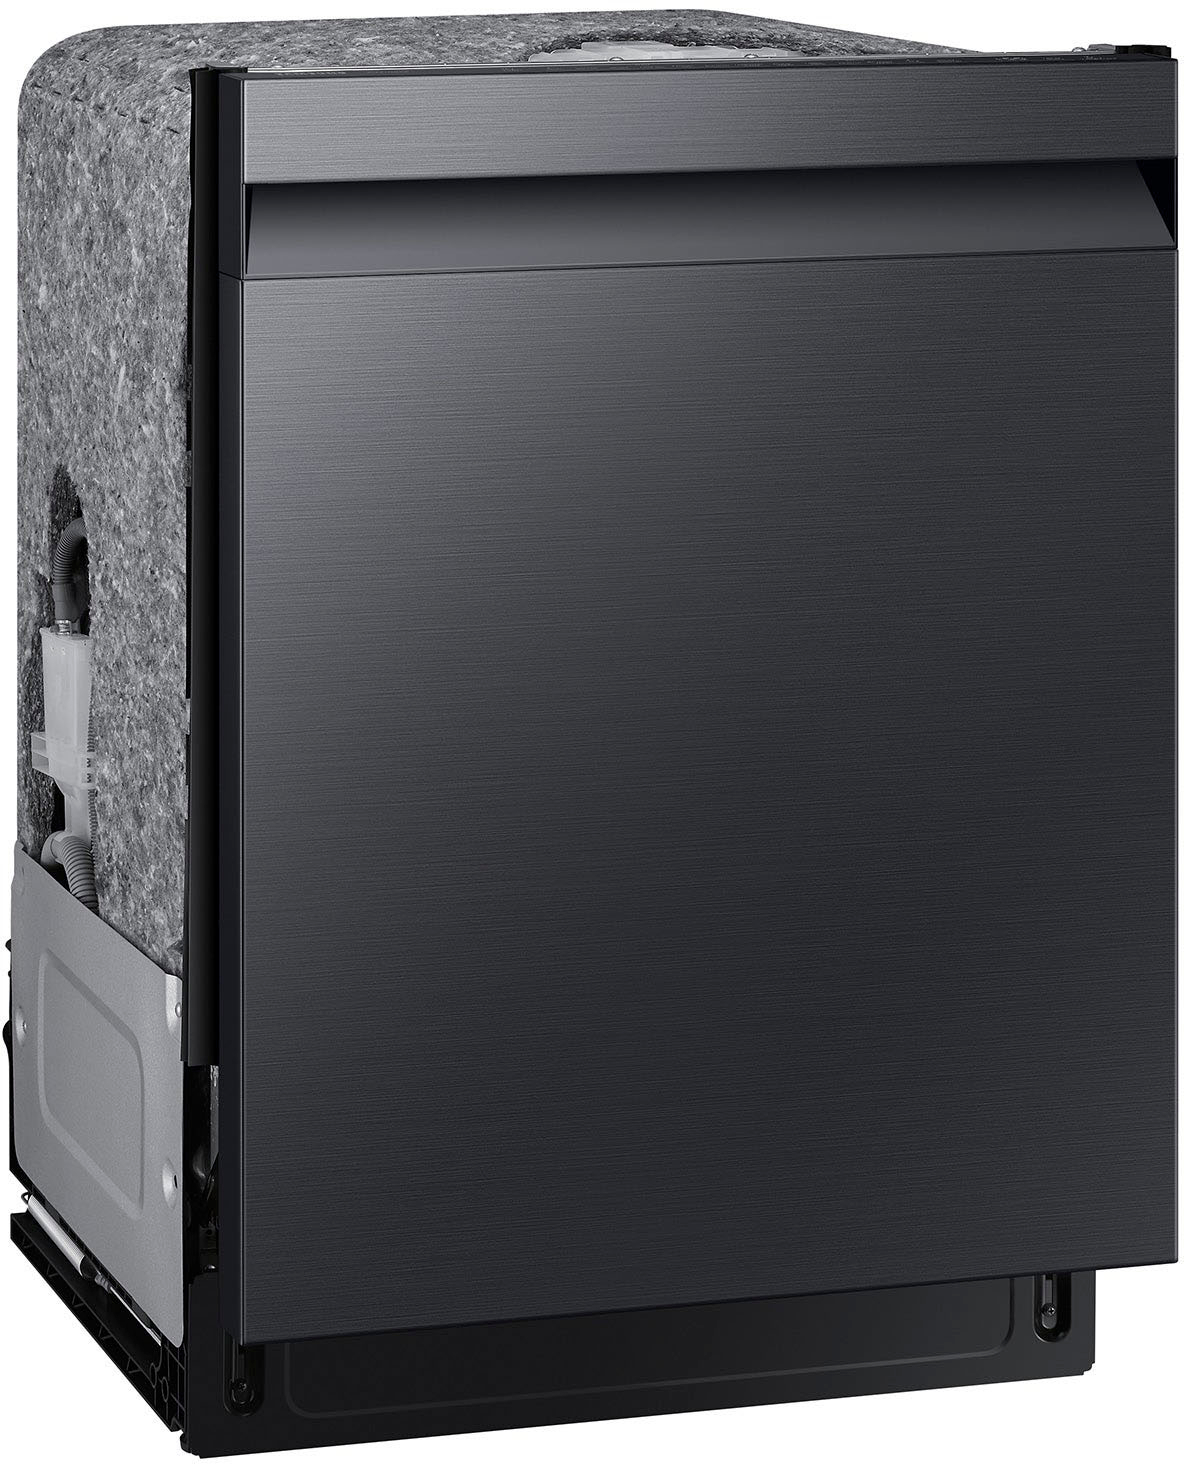 Samsung 46 DBA Smart Dishwasher in Fingerprint Resistant Matte Black